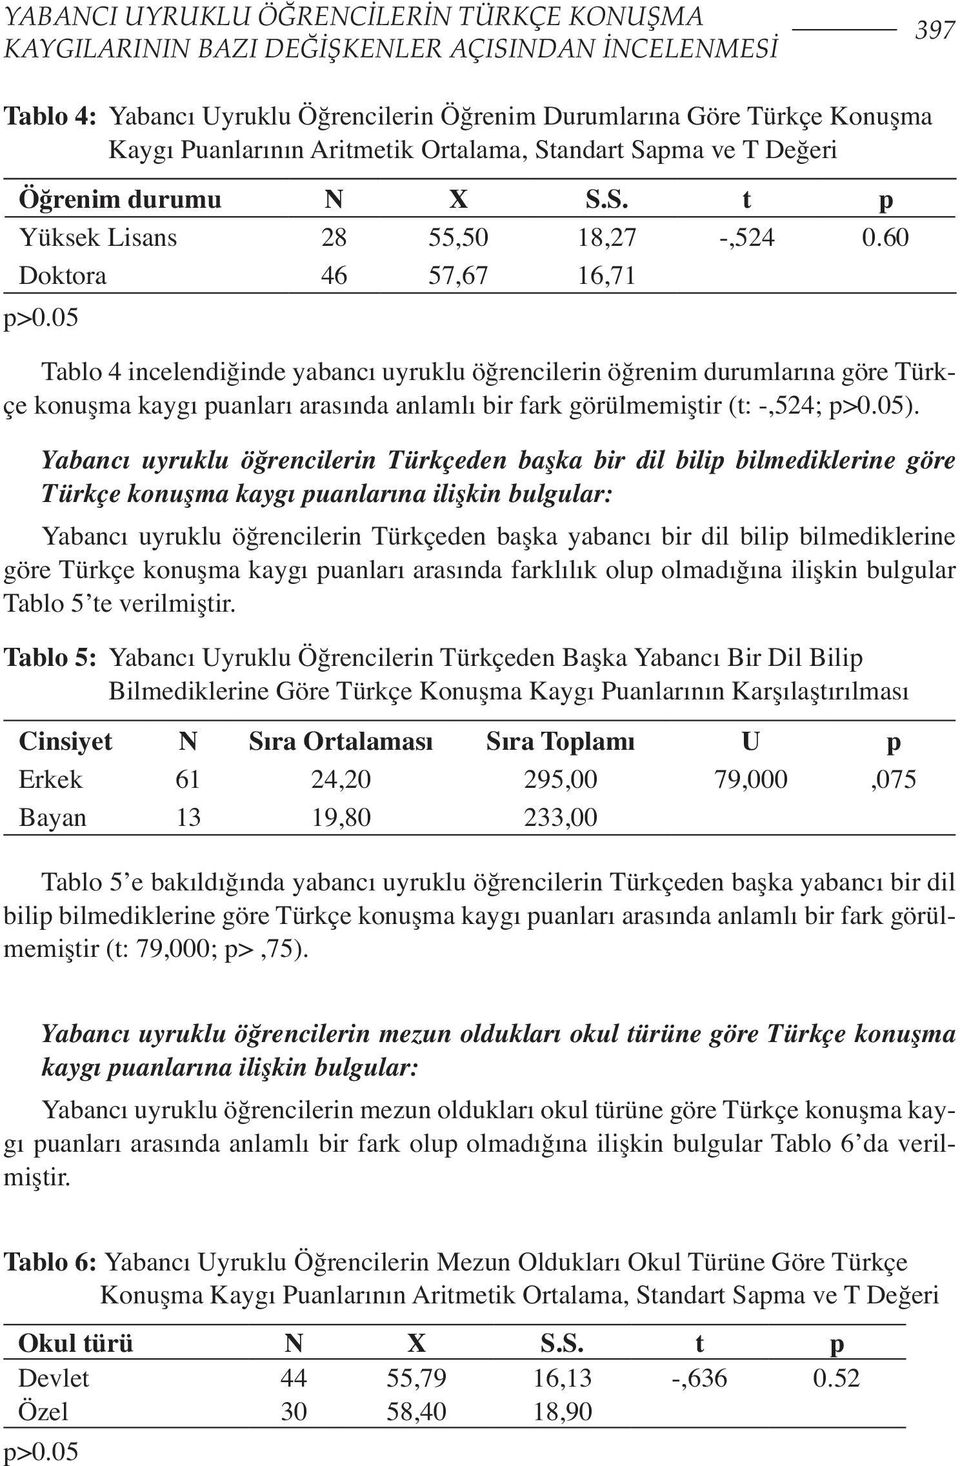 05 Tablo 4 incelendiğinde yabancı uyruklu öğrencilerin öğrenim durumlarına göre Türkçe konuşma kaygı puanları arasında anlamlı bir fark görülmemiştir (t: -,524; p>0.05).